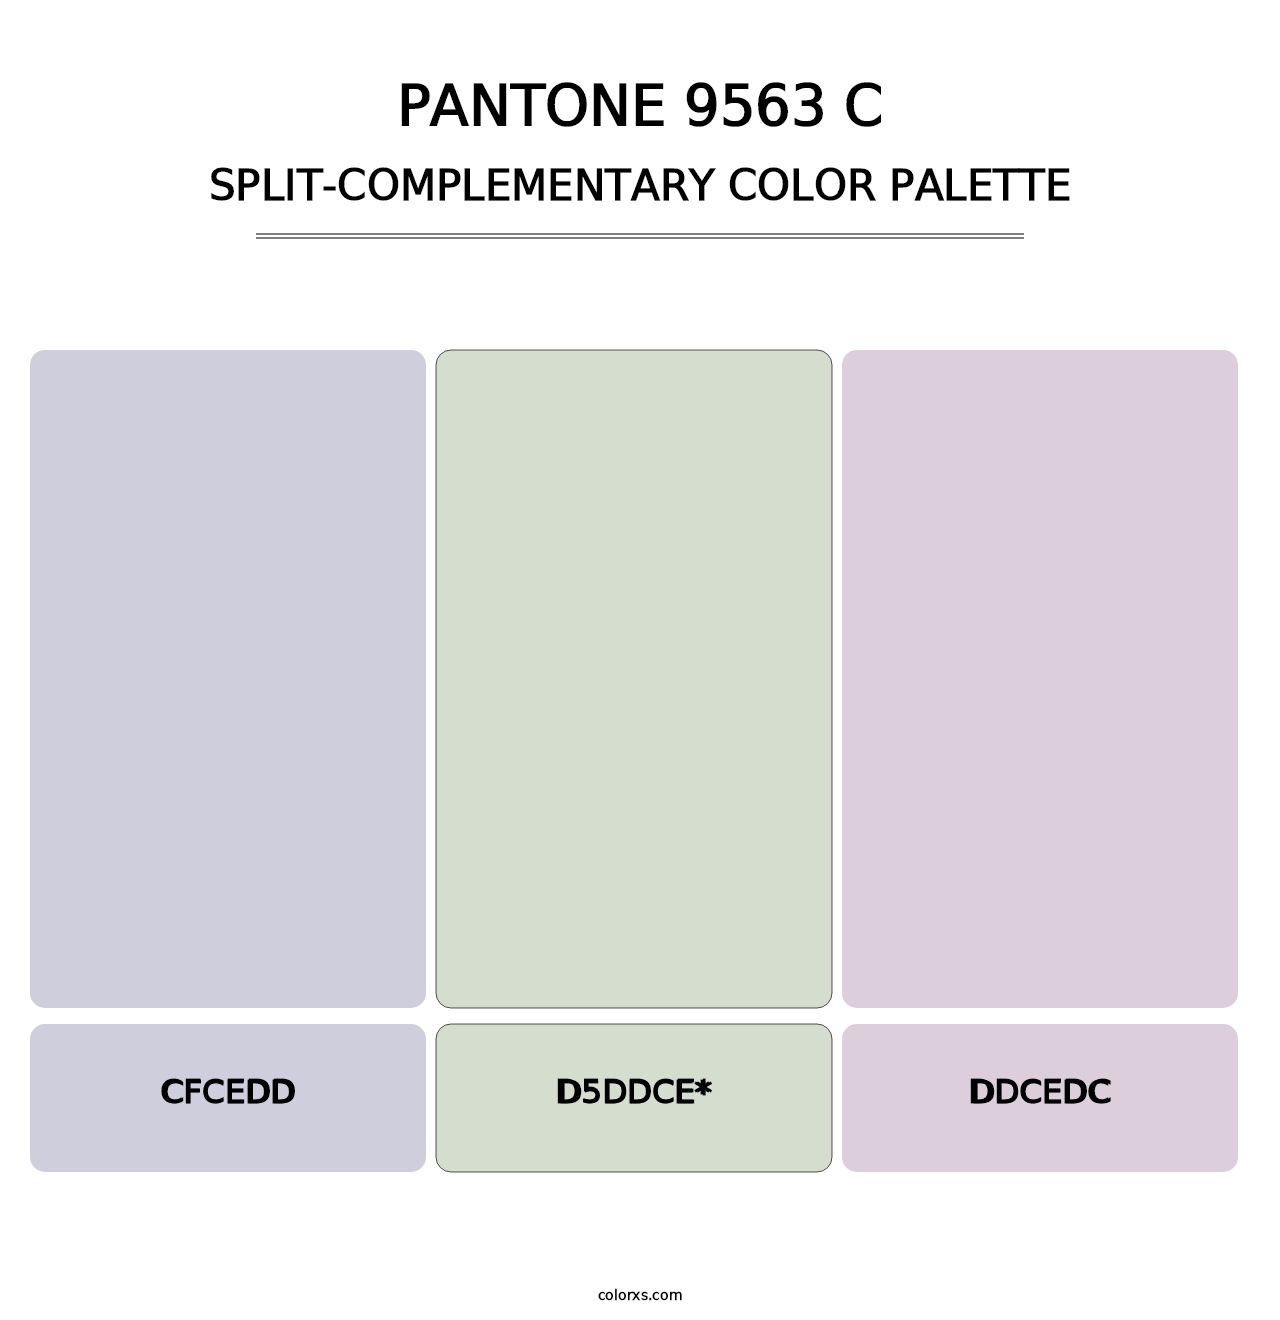 PANTONE 9563 C - Split-Complementary Color Palette